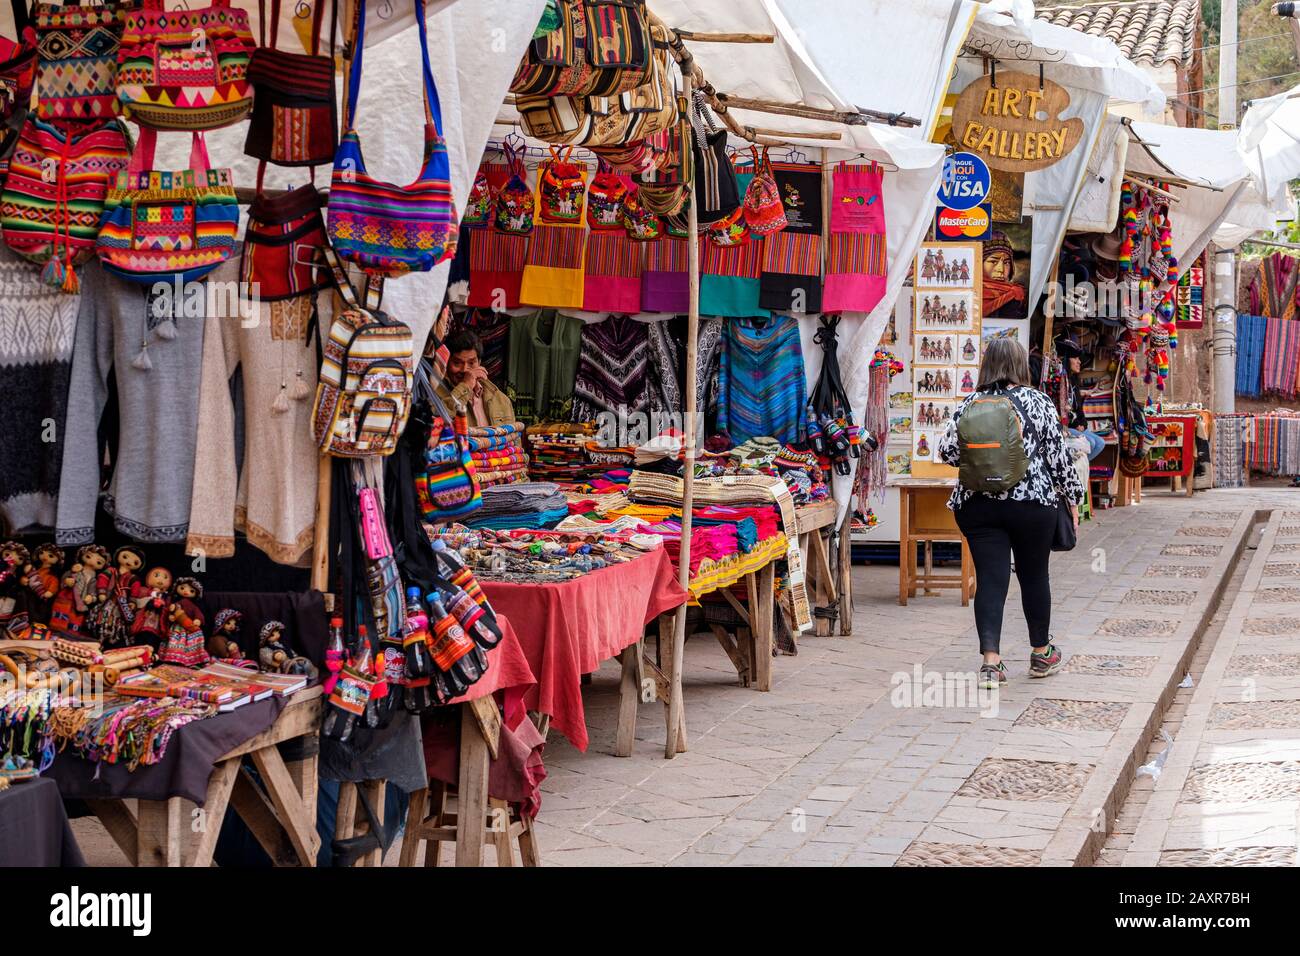 Mercado de Perú, mercado dominical en la ciudad de Pisac, vendedores, locales, turistas en la ciudad de Pisac mercado, Perú Valle Sagrado Perú Foto de stock